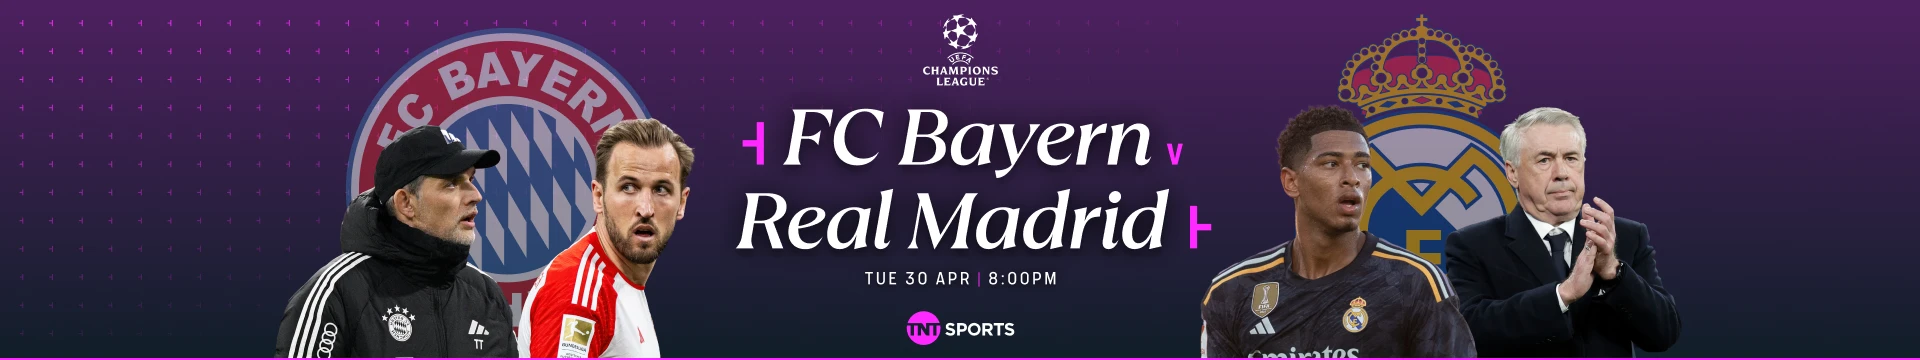 FC Bayern v Real Madrid Tuesday 30 April at 8pm